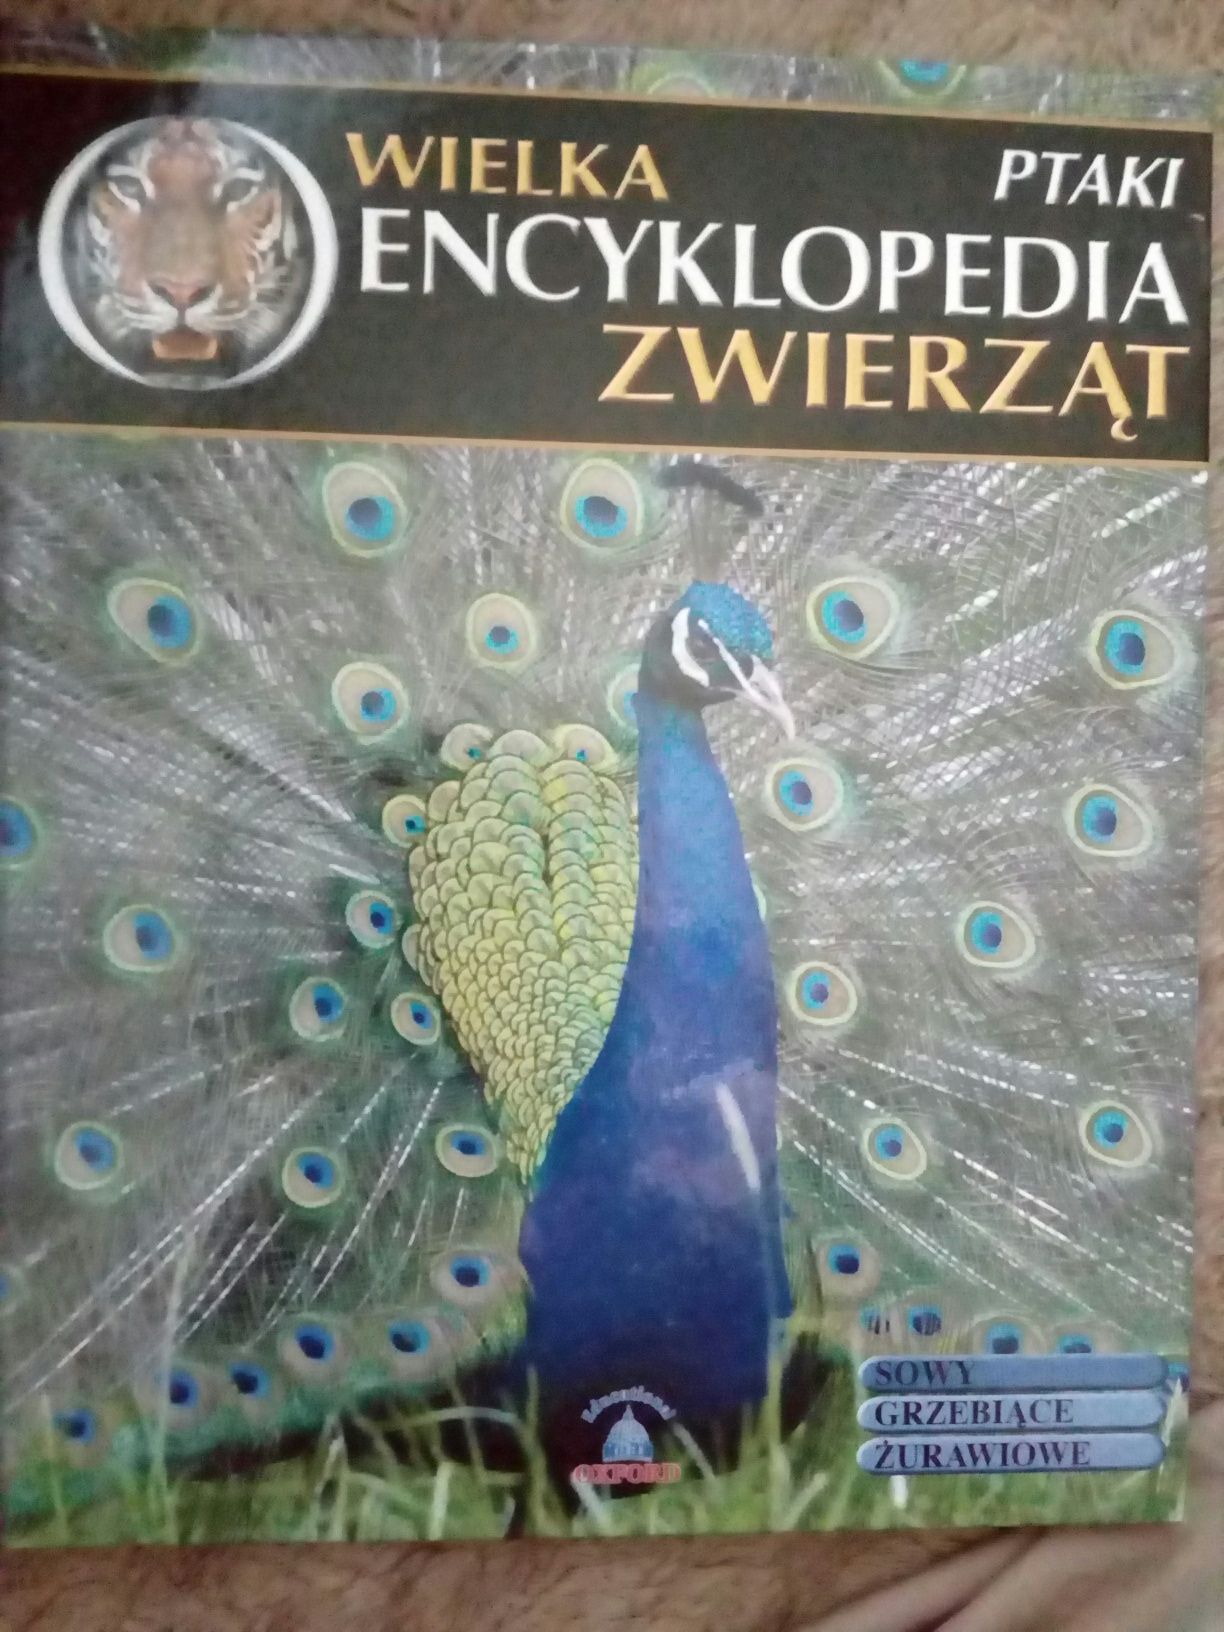 Wielka Encyklopedia Zwierząt. Ptaki t. 11